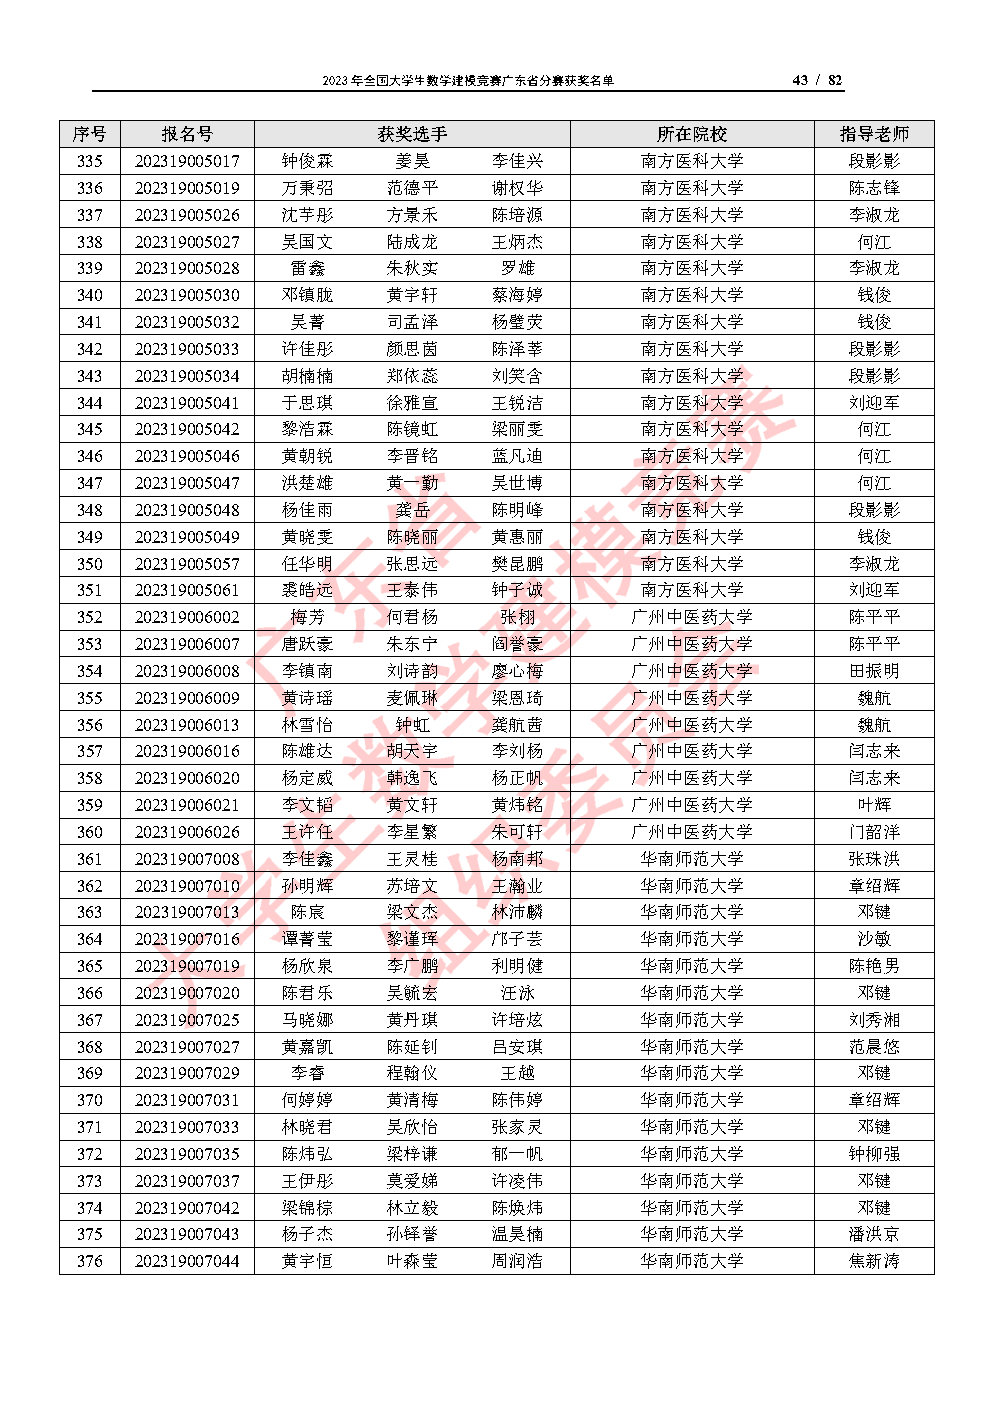 2023年全国大学生数学建模竞赛广东省分赛获奖名单_Page43.jpg